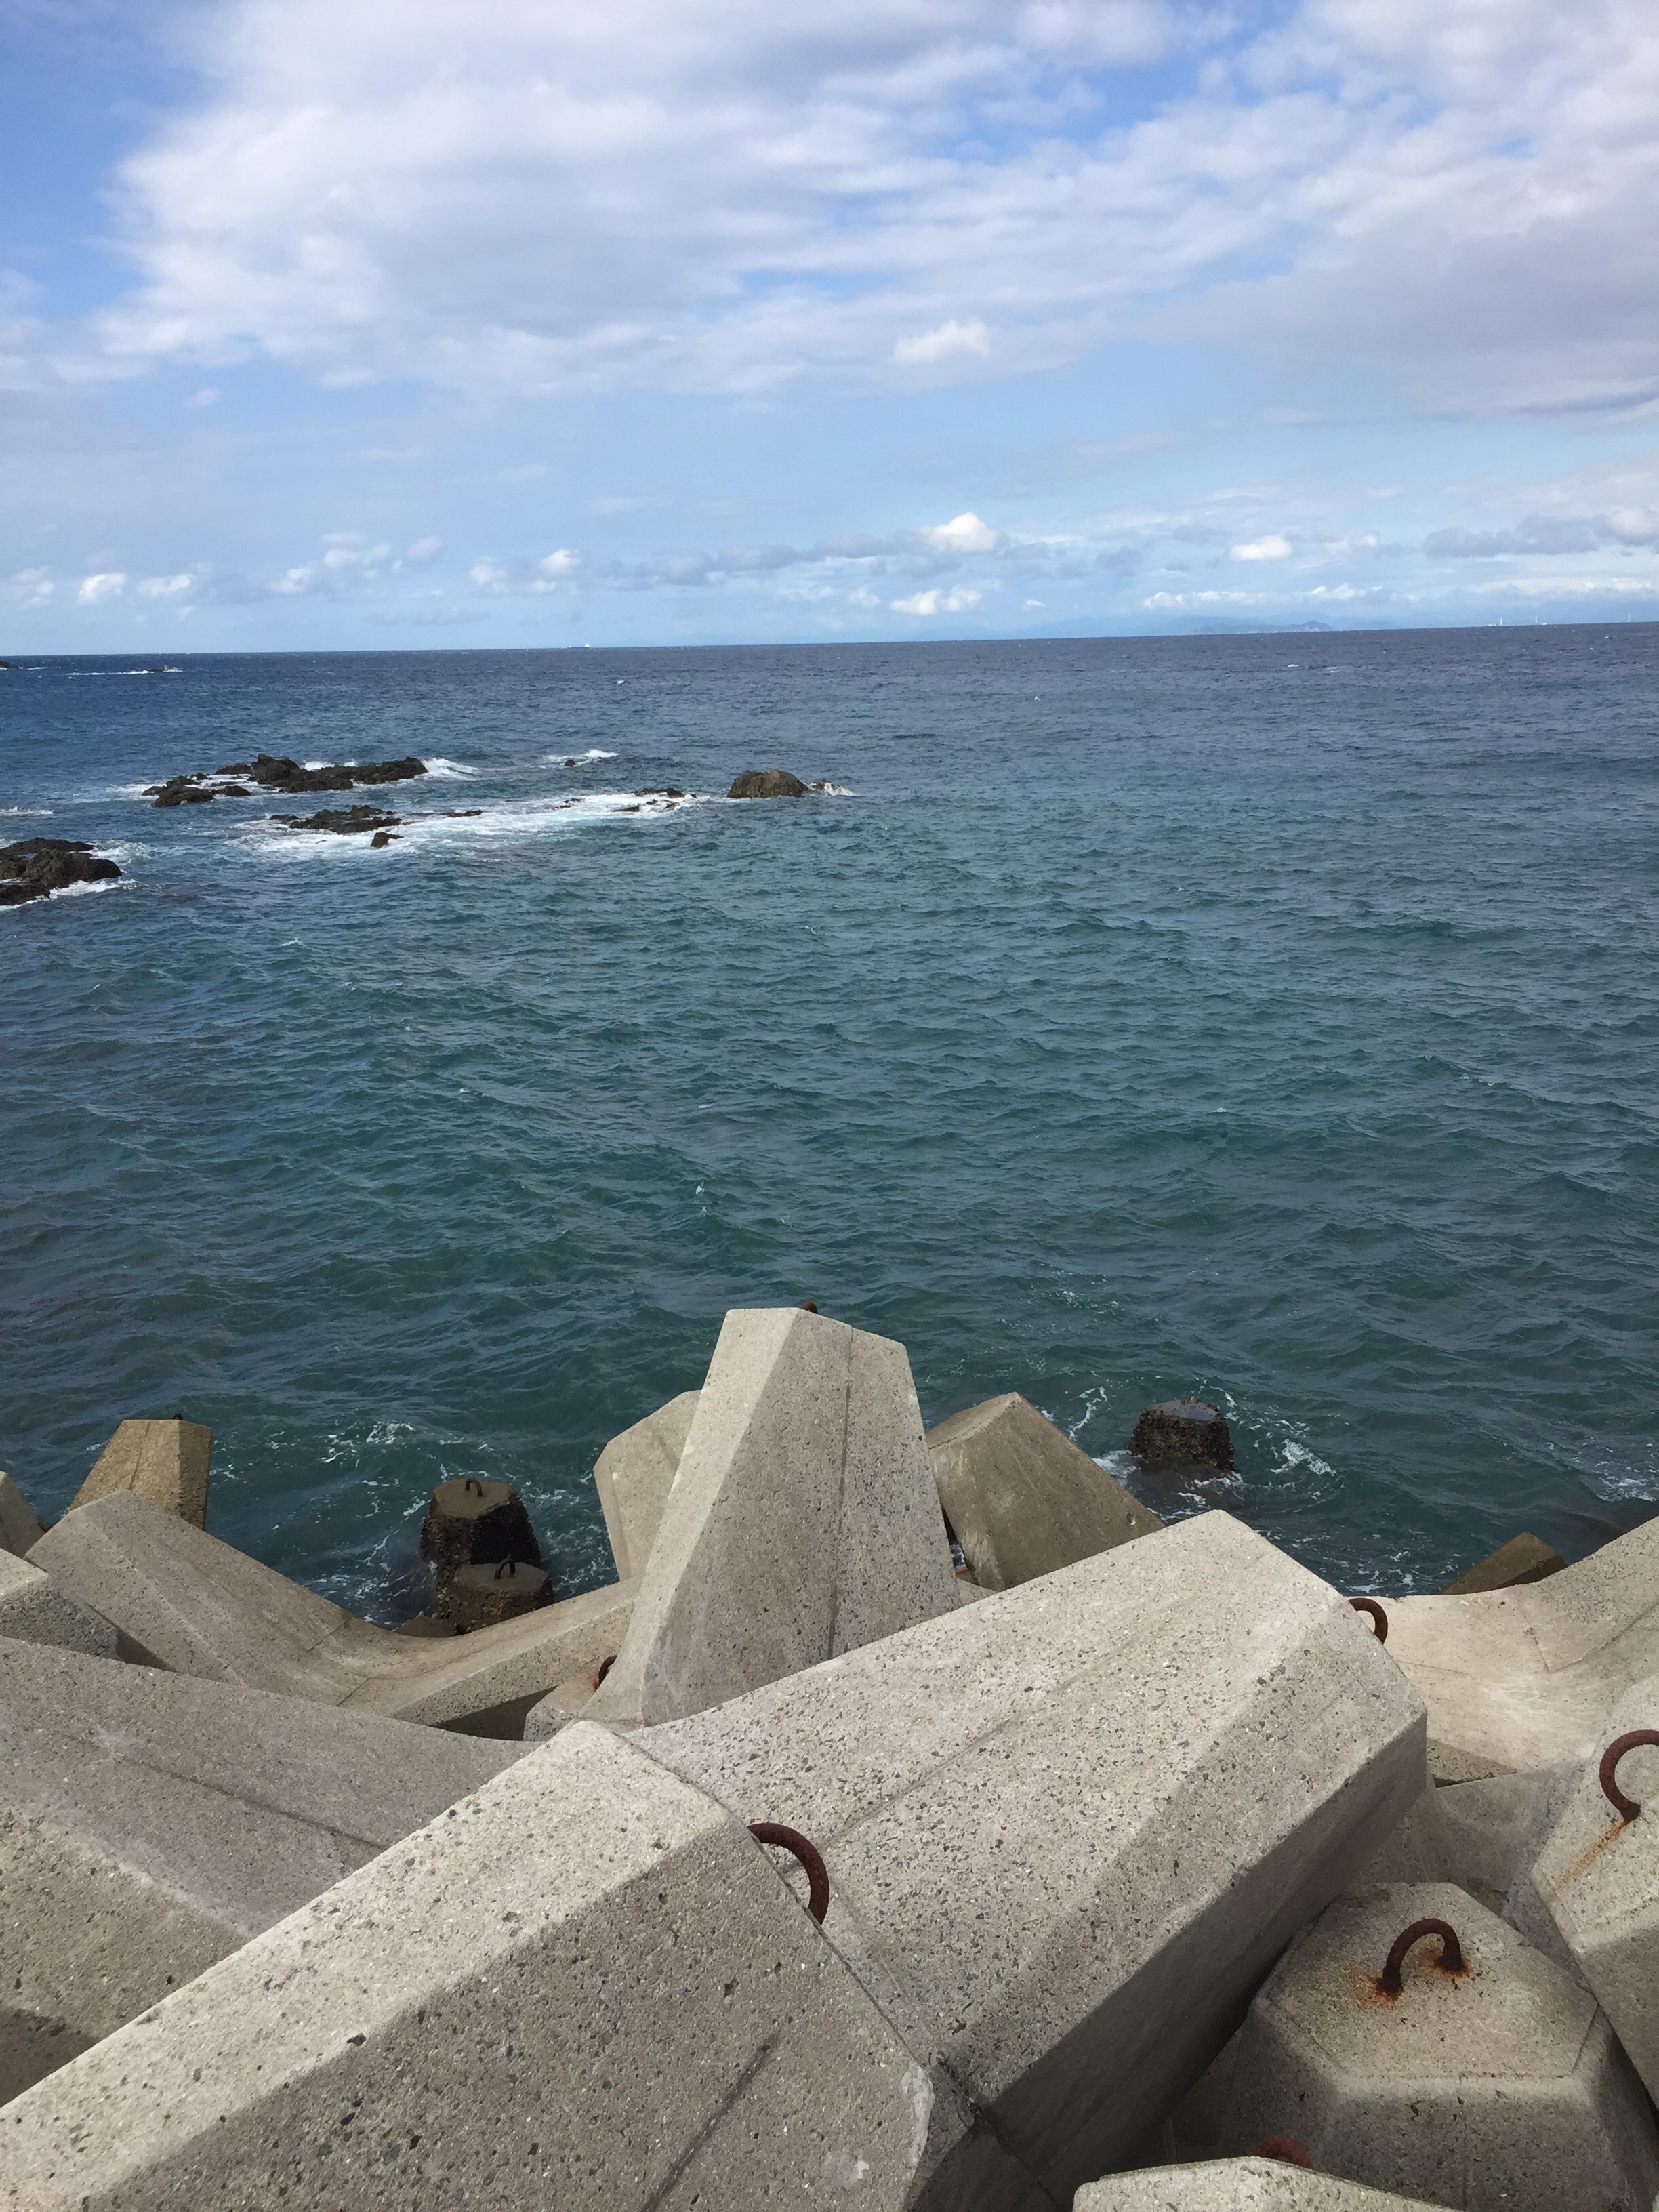 田杭漁港の釣り場紹介、和歌山中紀の日の岬の近くのエギングにオススメの漁港